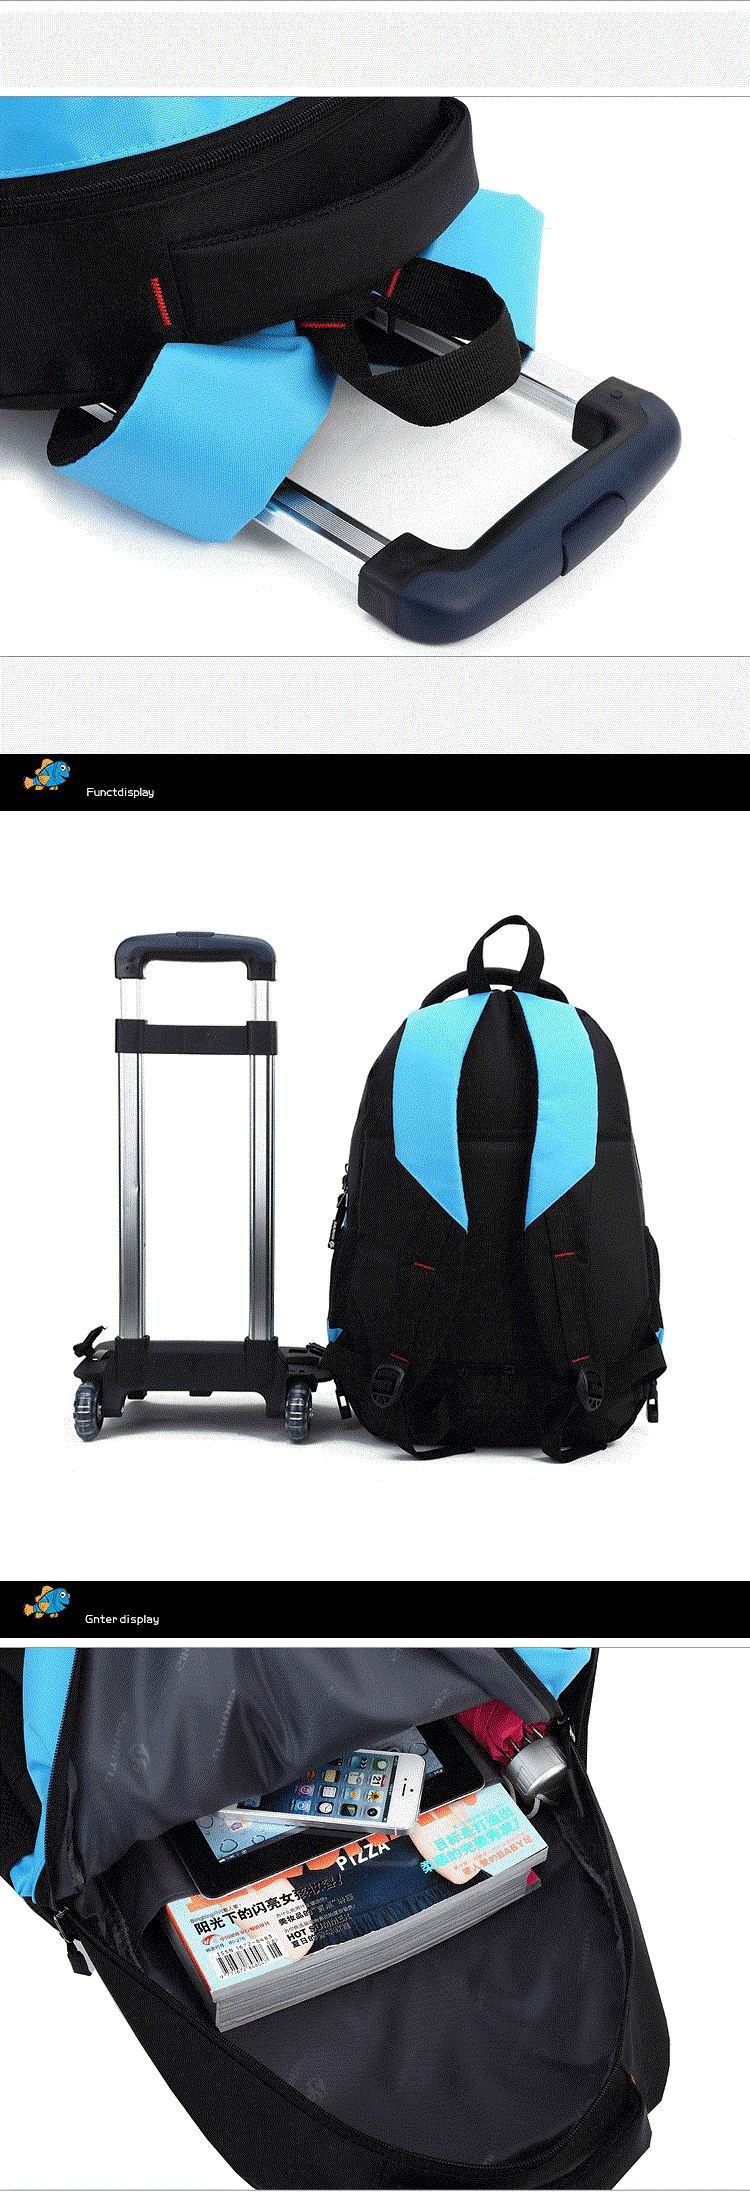 school-trolley-backpack-bag-wheels-backpack-luggage-travel-6